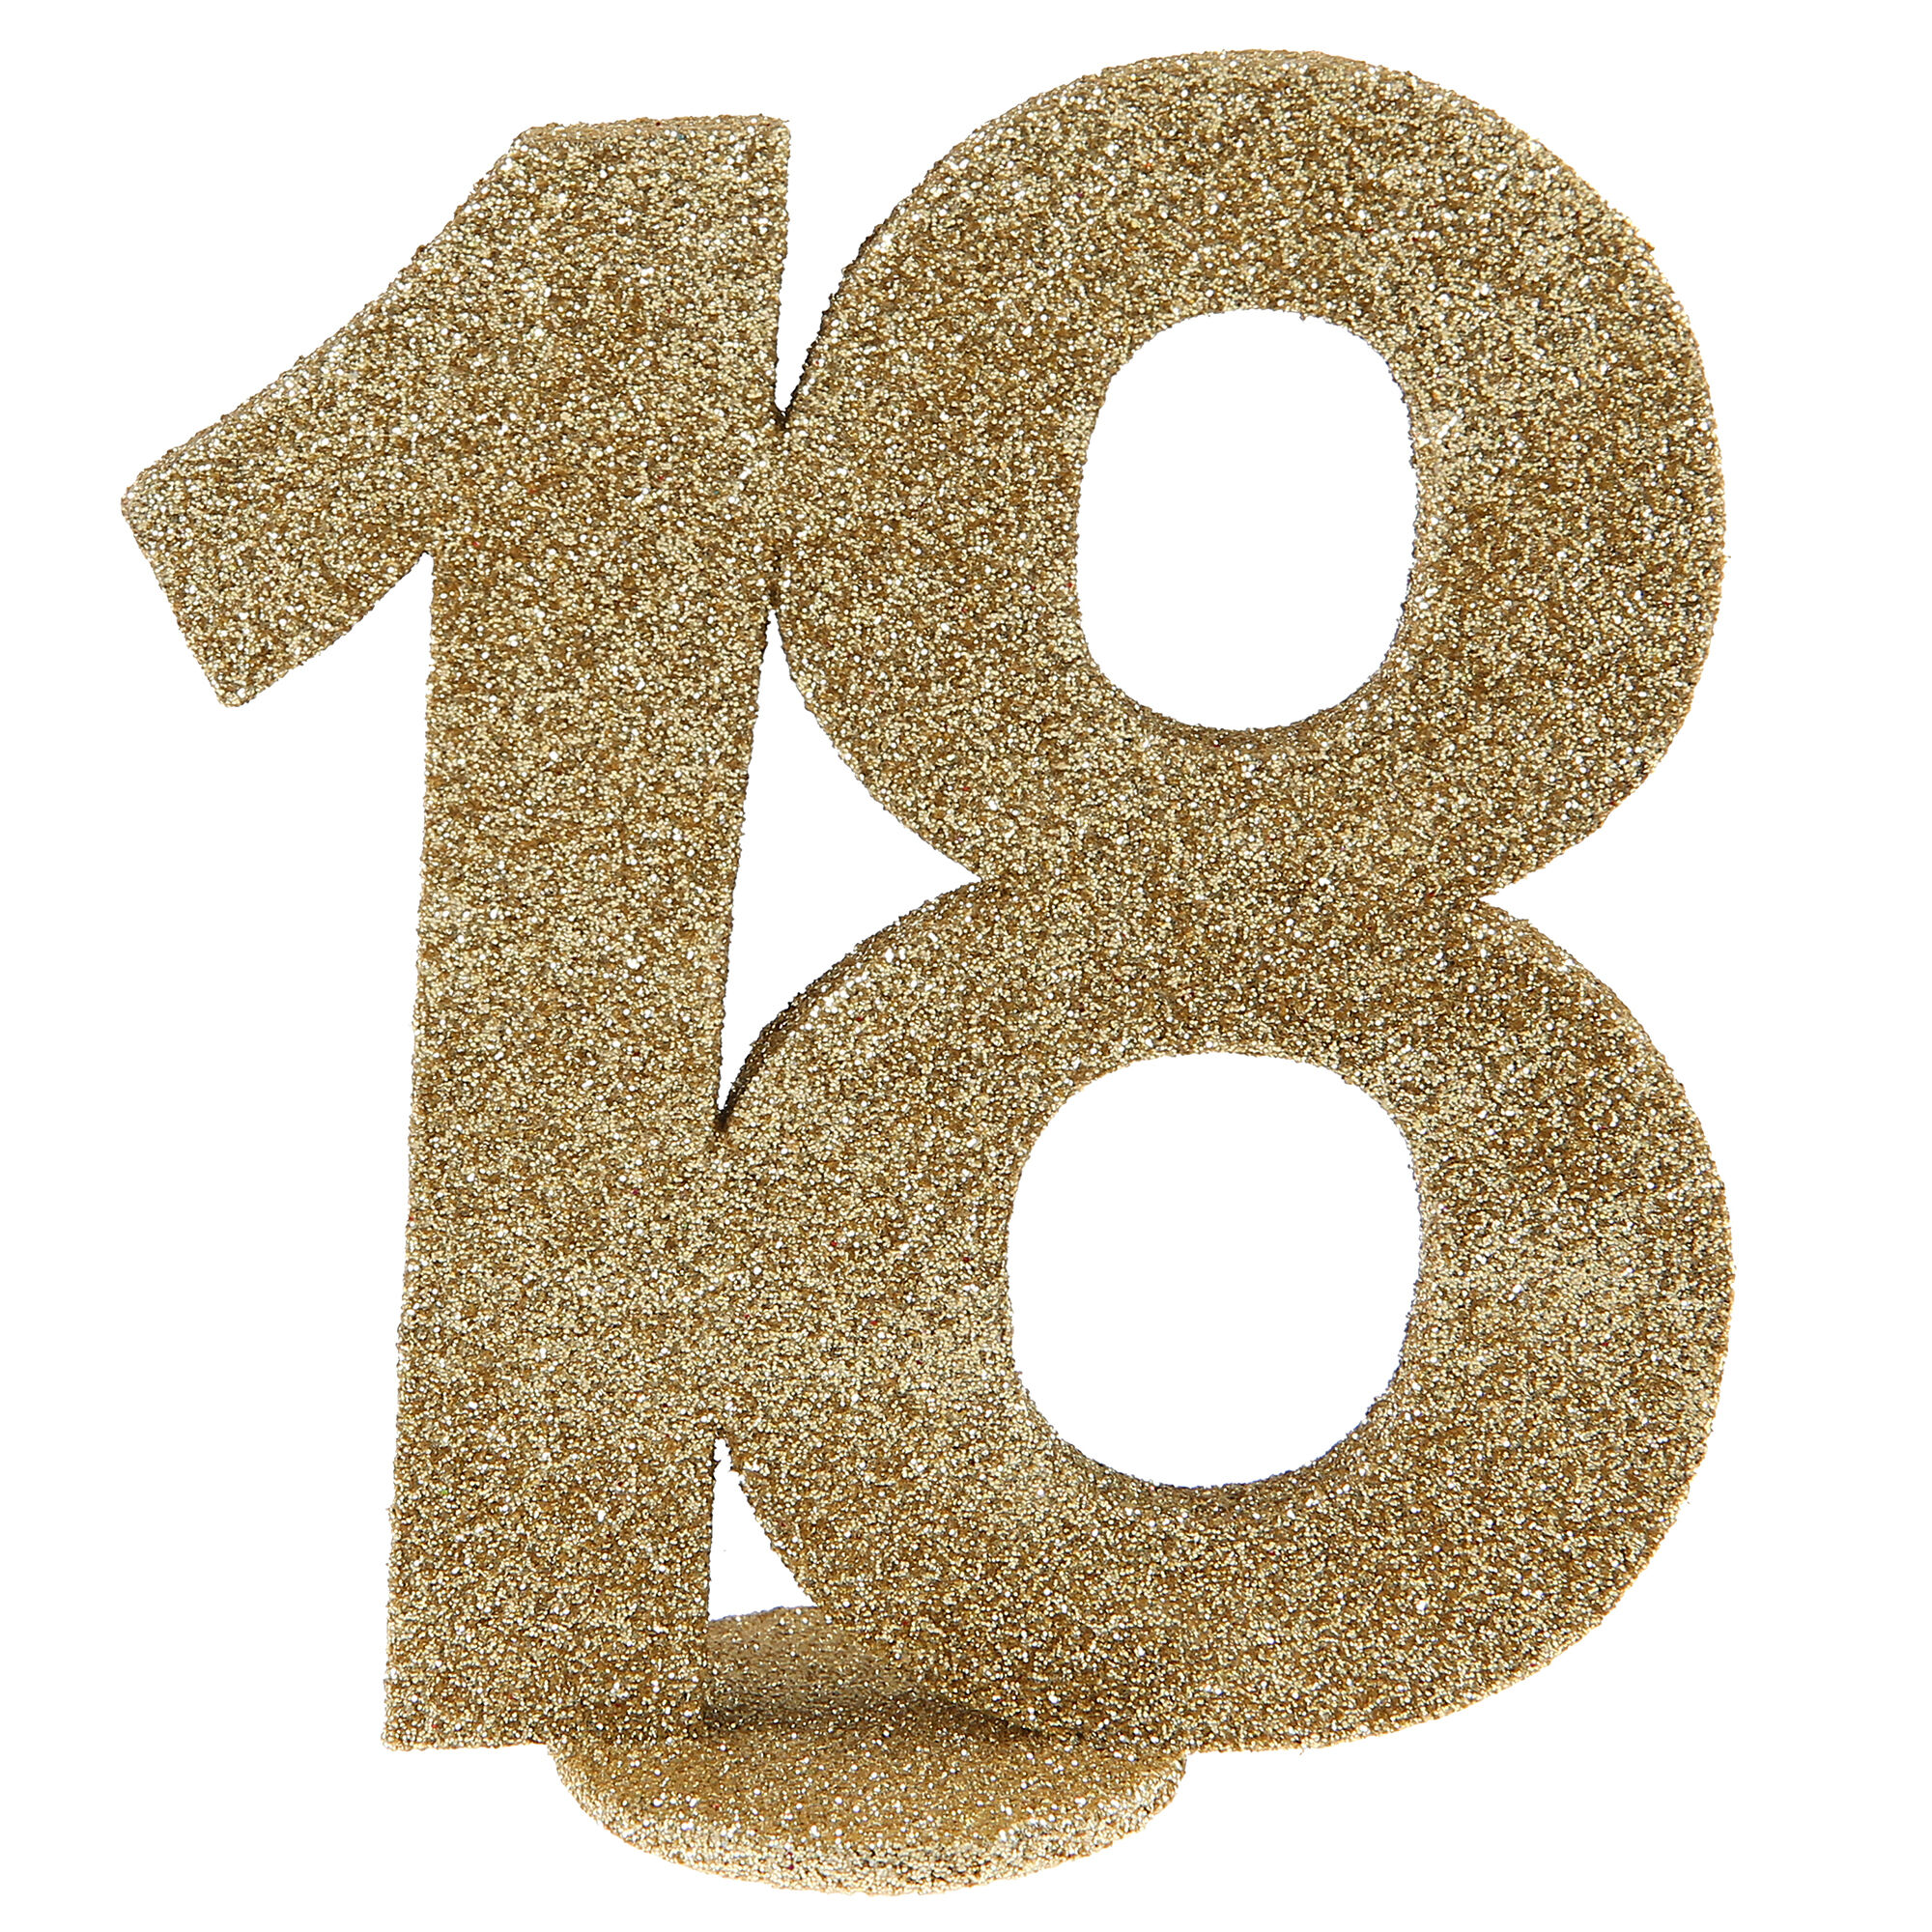 NEU Aufsteller Geburtstags-Zahl 18, glitter-gold, ca. 10cm